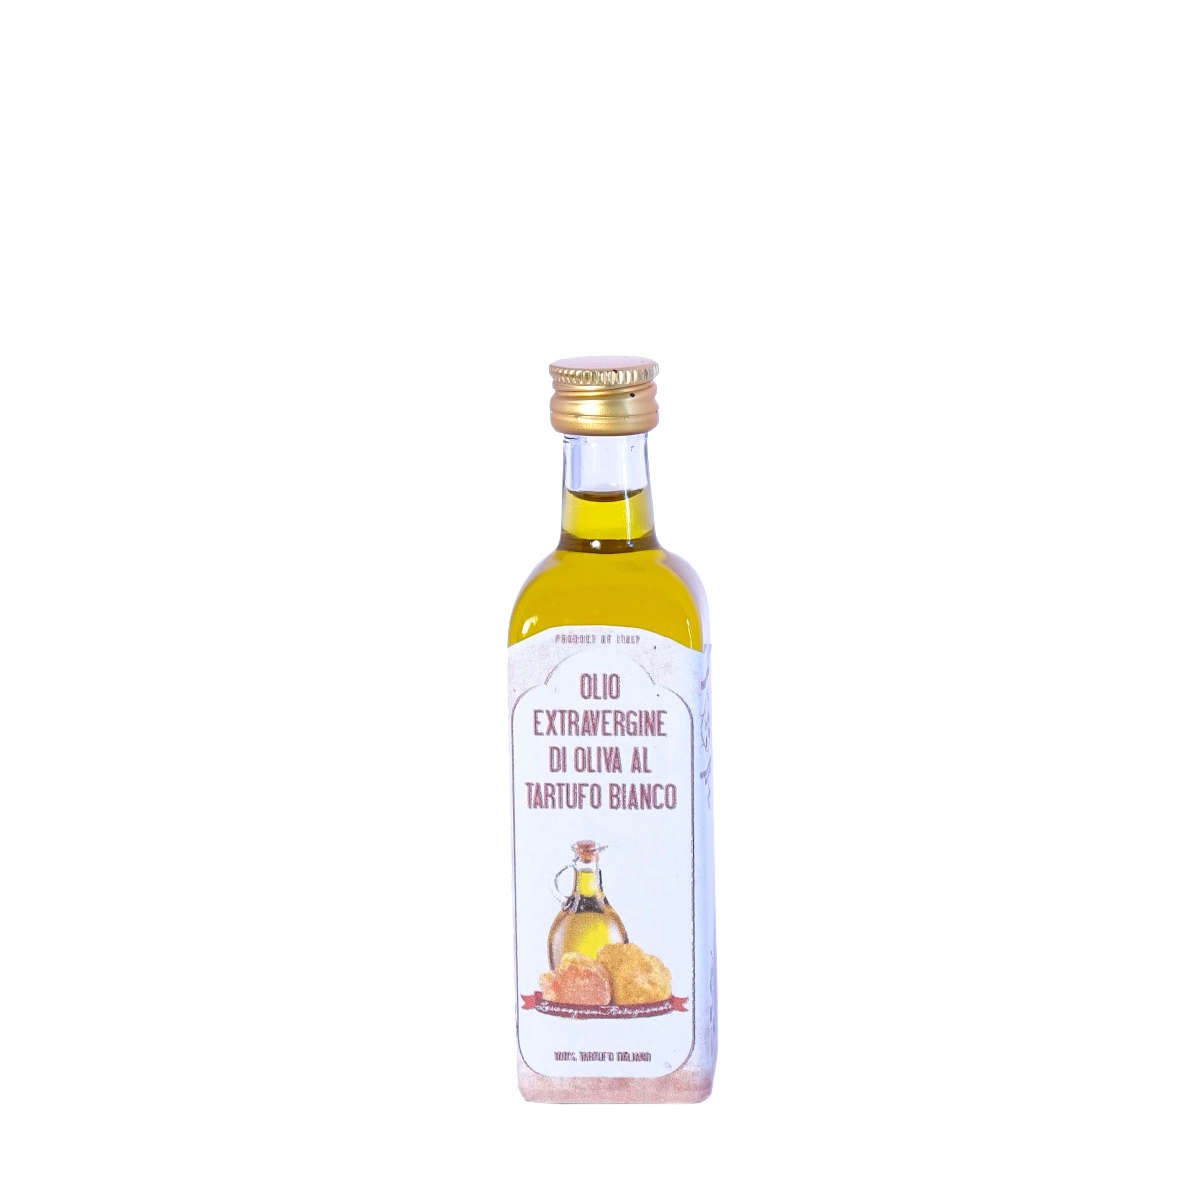 Olio extra vergine di oliva al tartufo bianco 60ml